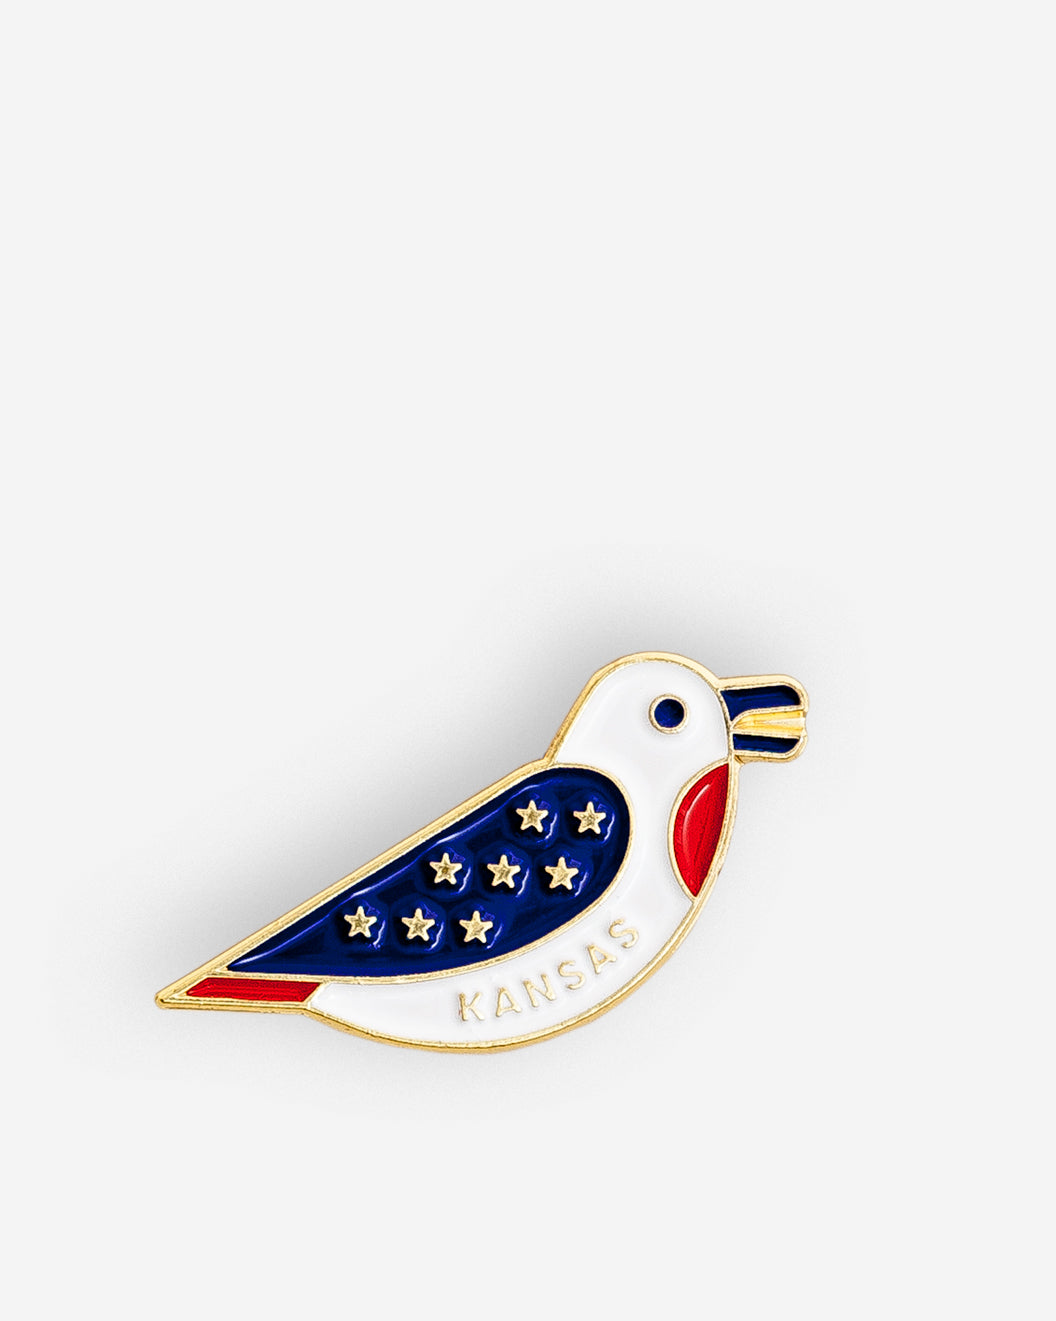 State Bird Pin, Kansas